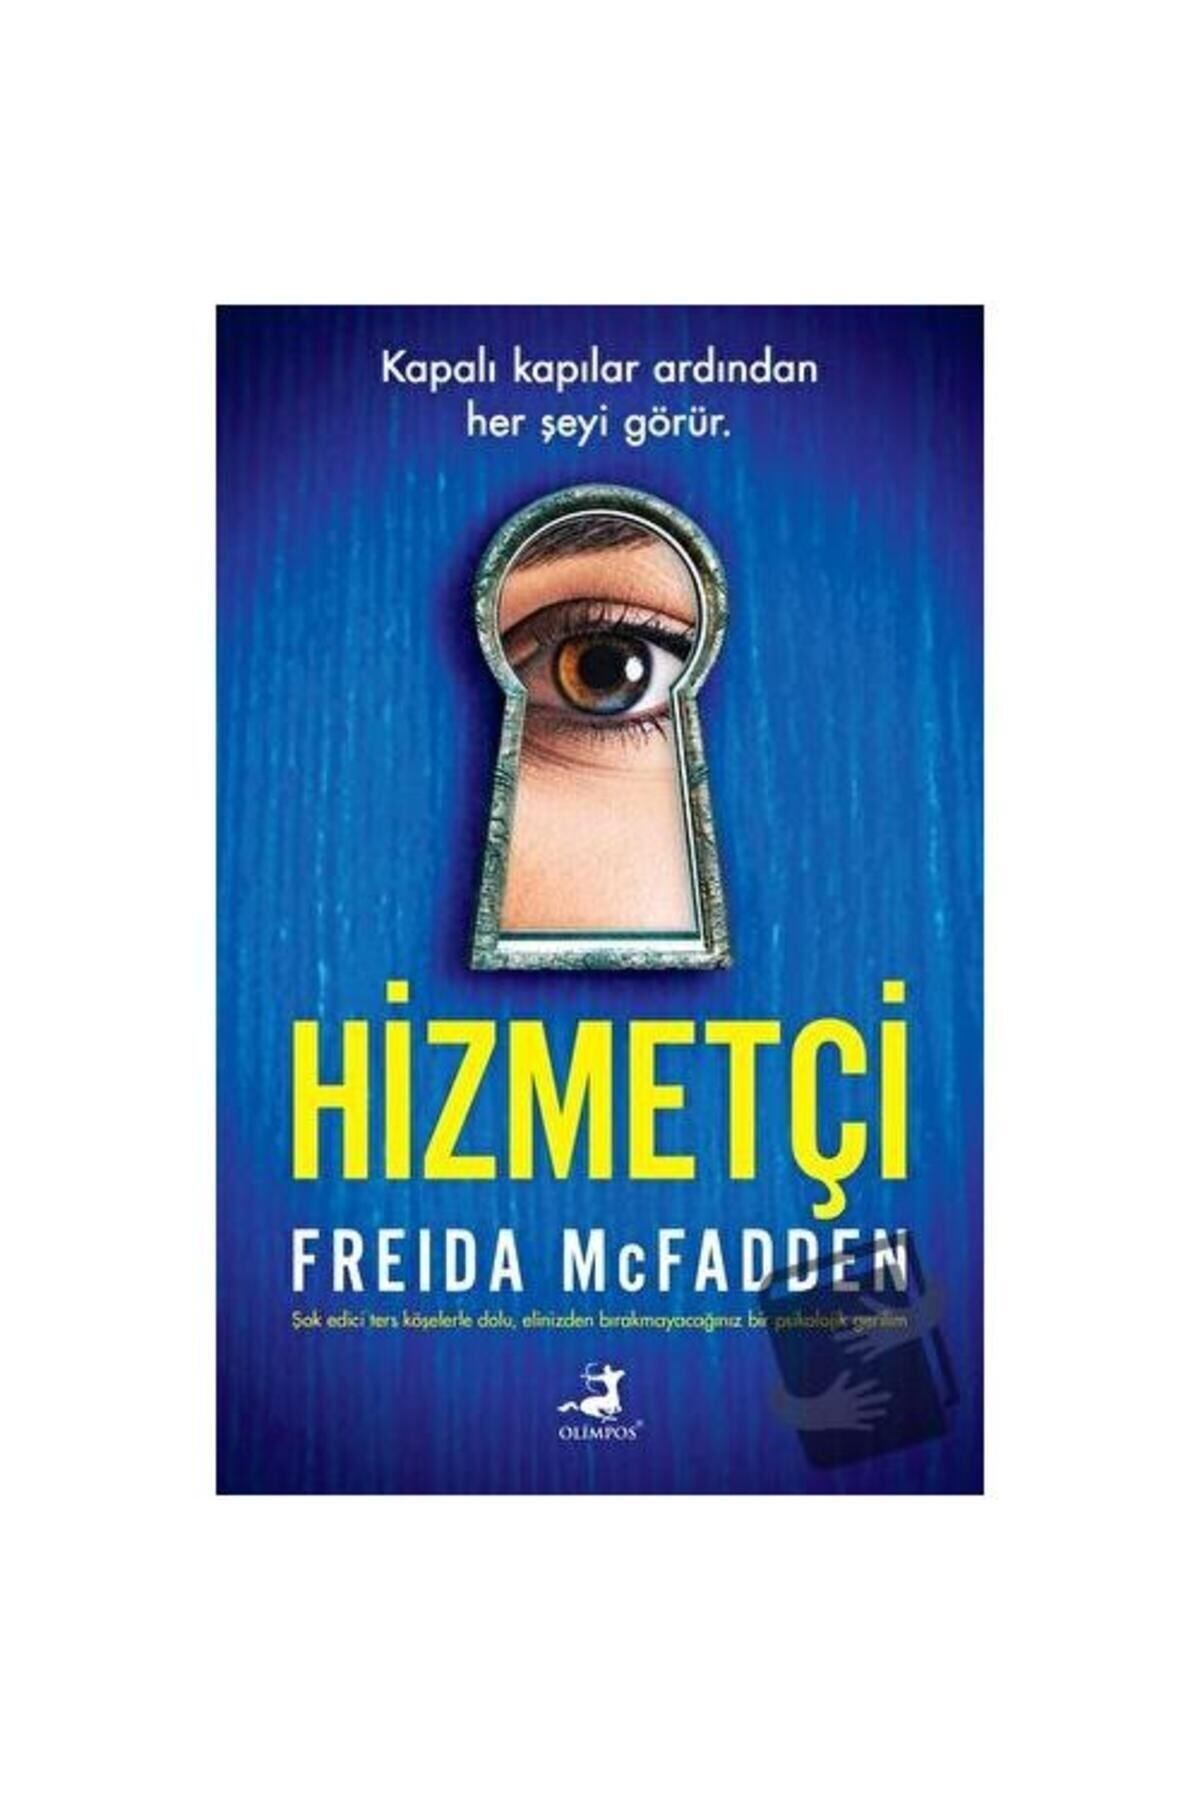 Olimpos Yayınları Hizmetçi / / Freida Mcfadden